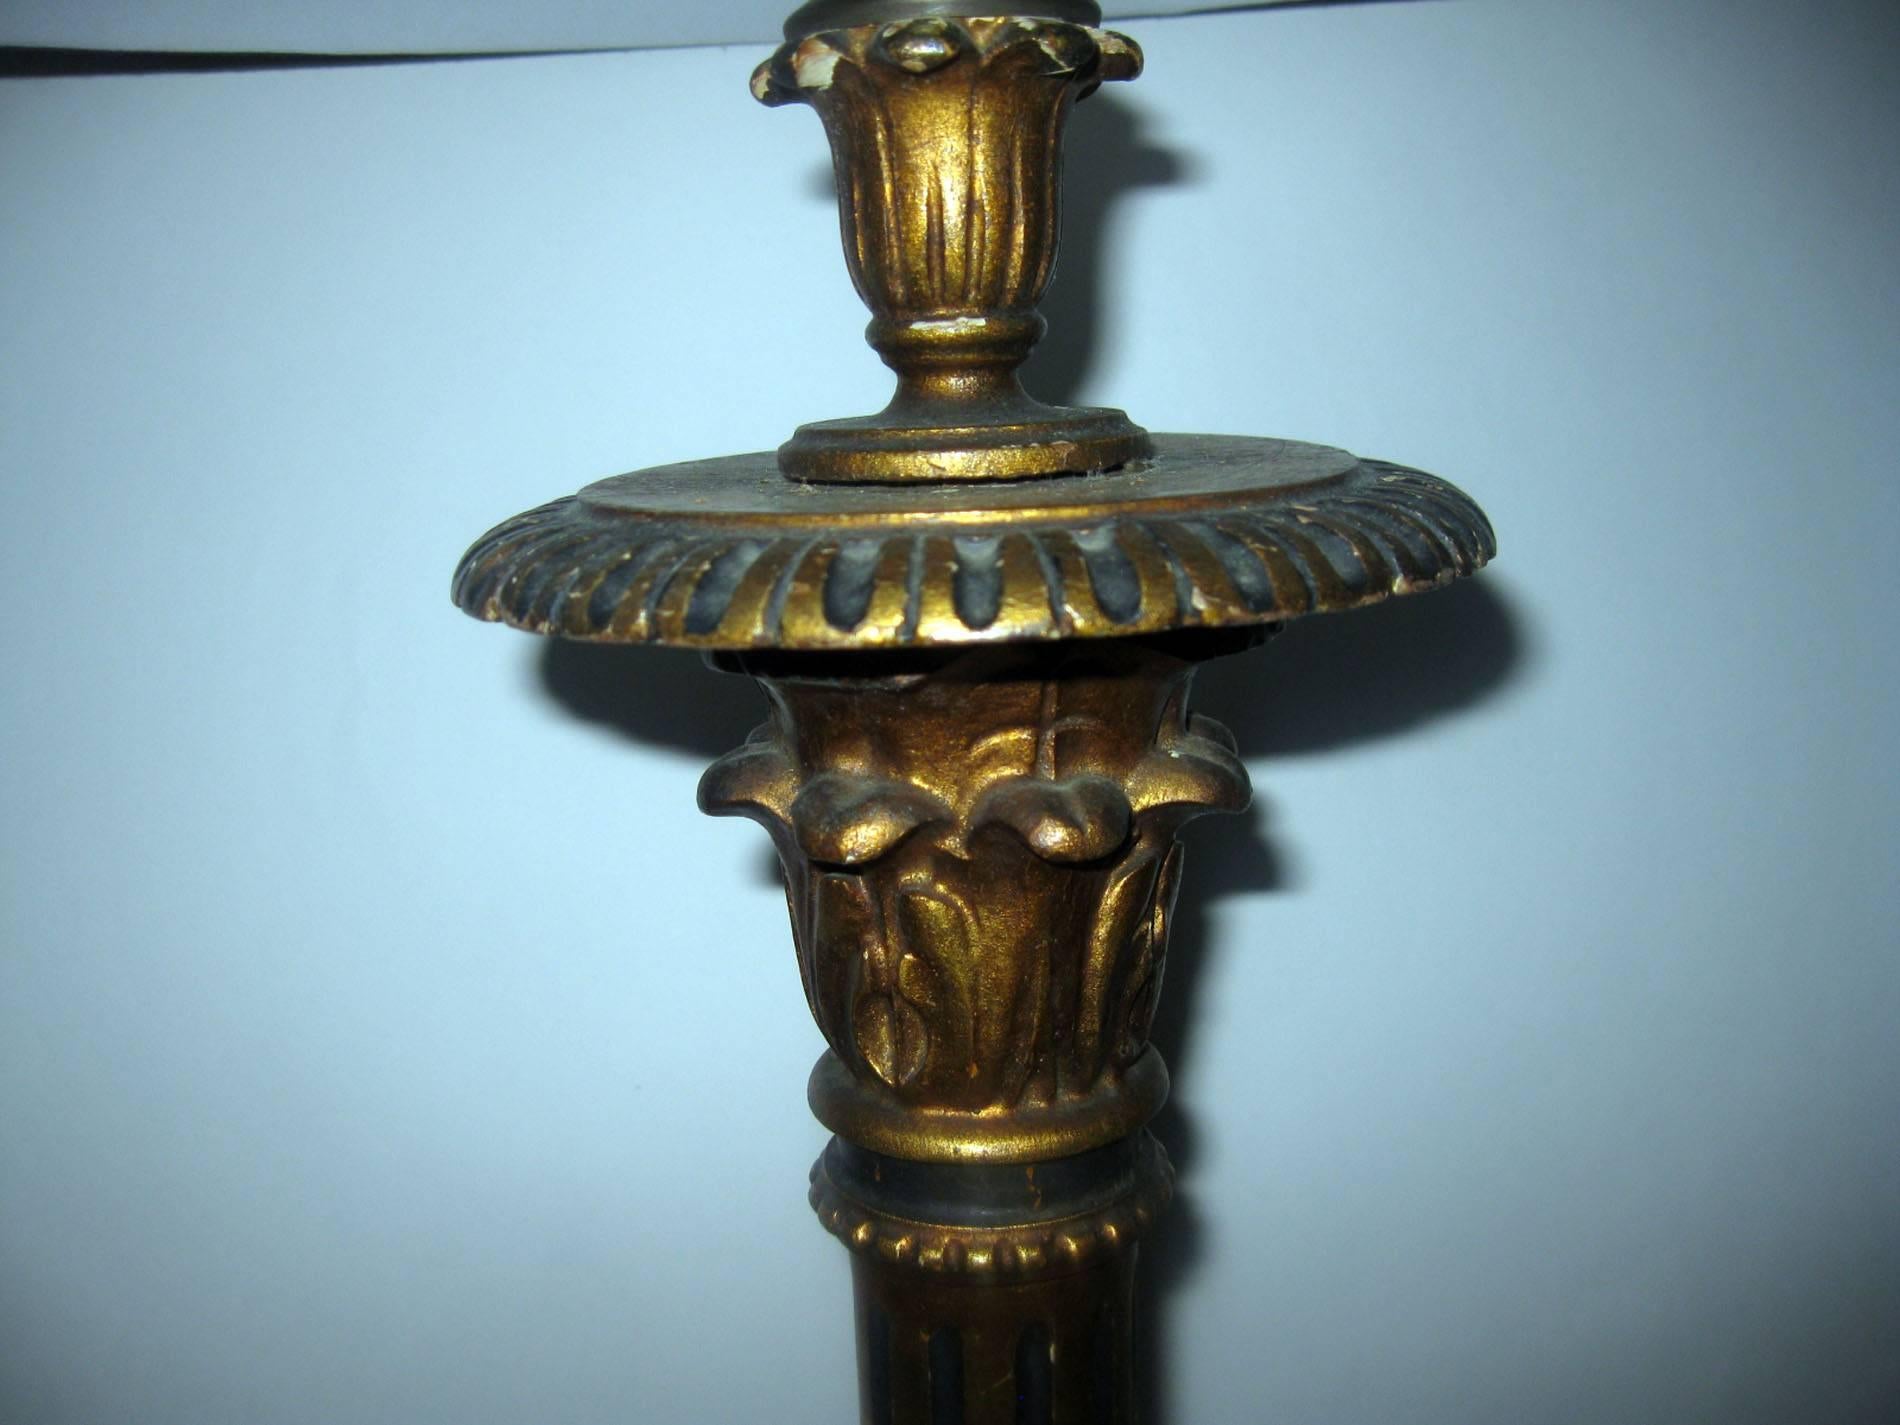 Klassisches Paar italienischer Goldholz-Kerzenhalter aus dem späten 19. Jahrhundert mit vielen Details und schöner alter Patina. Die kannelierten korinthischen Säulen stehen auf dreiförmigen Sockeln mit Krallenfüßen. Claret farbigen Seide Schirme